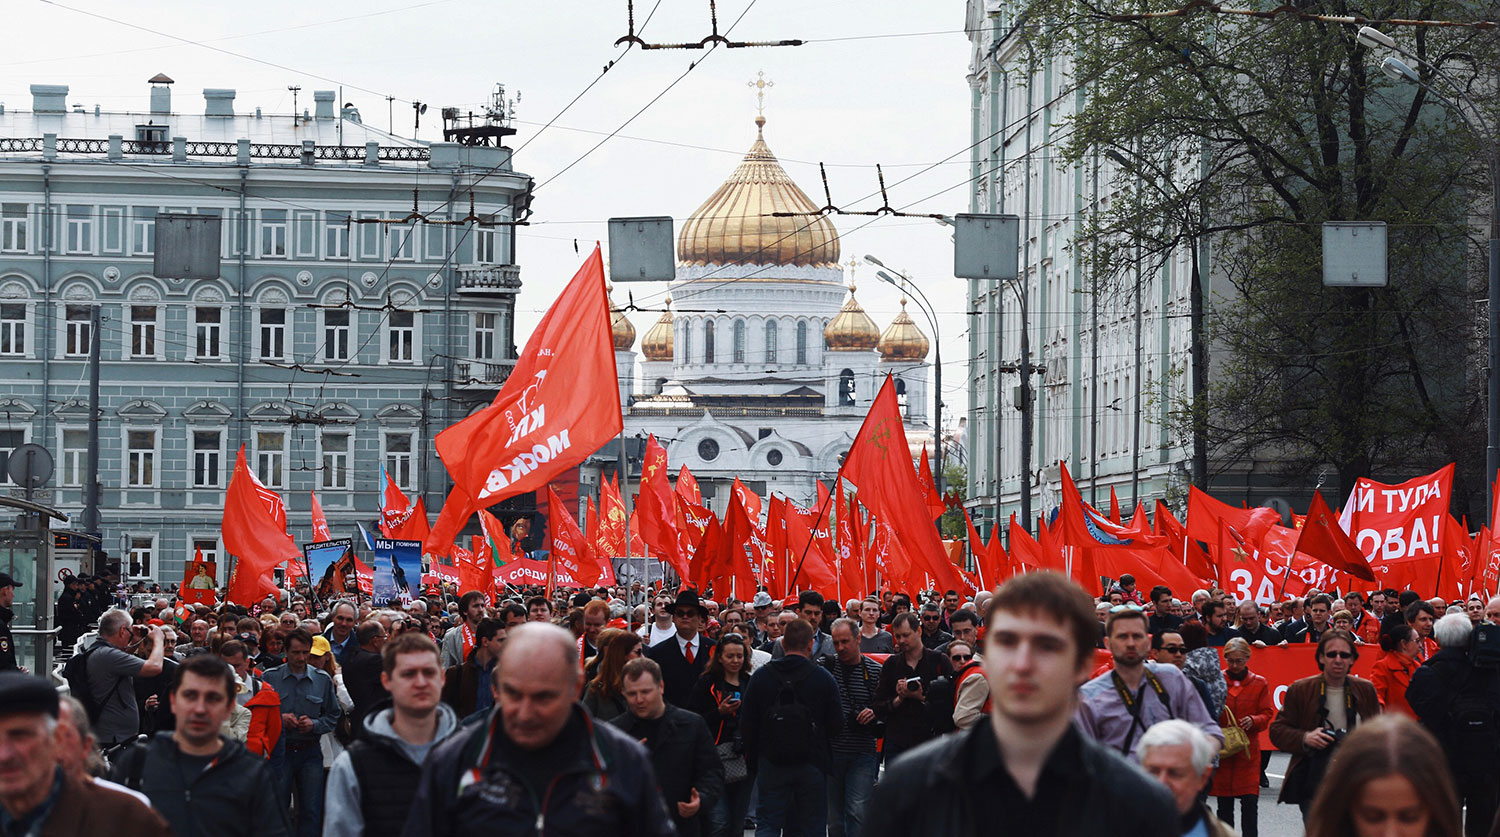 Демонстрация в Москве